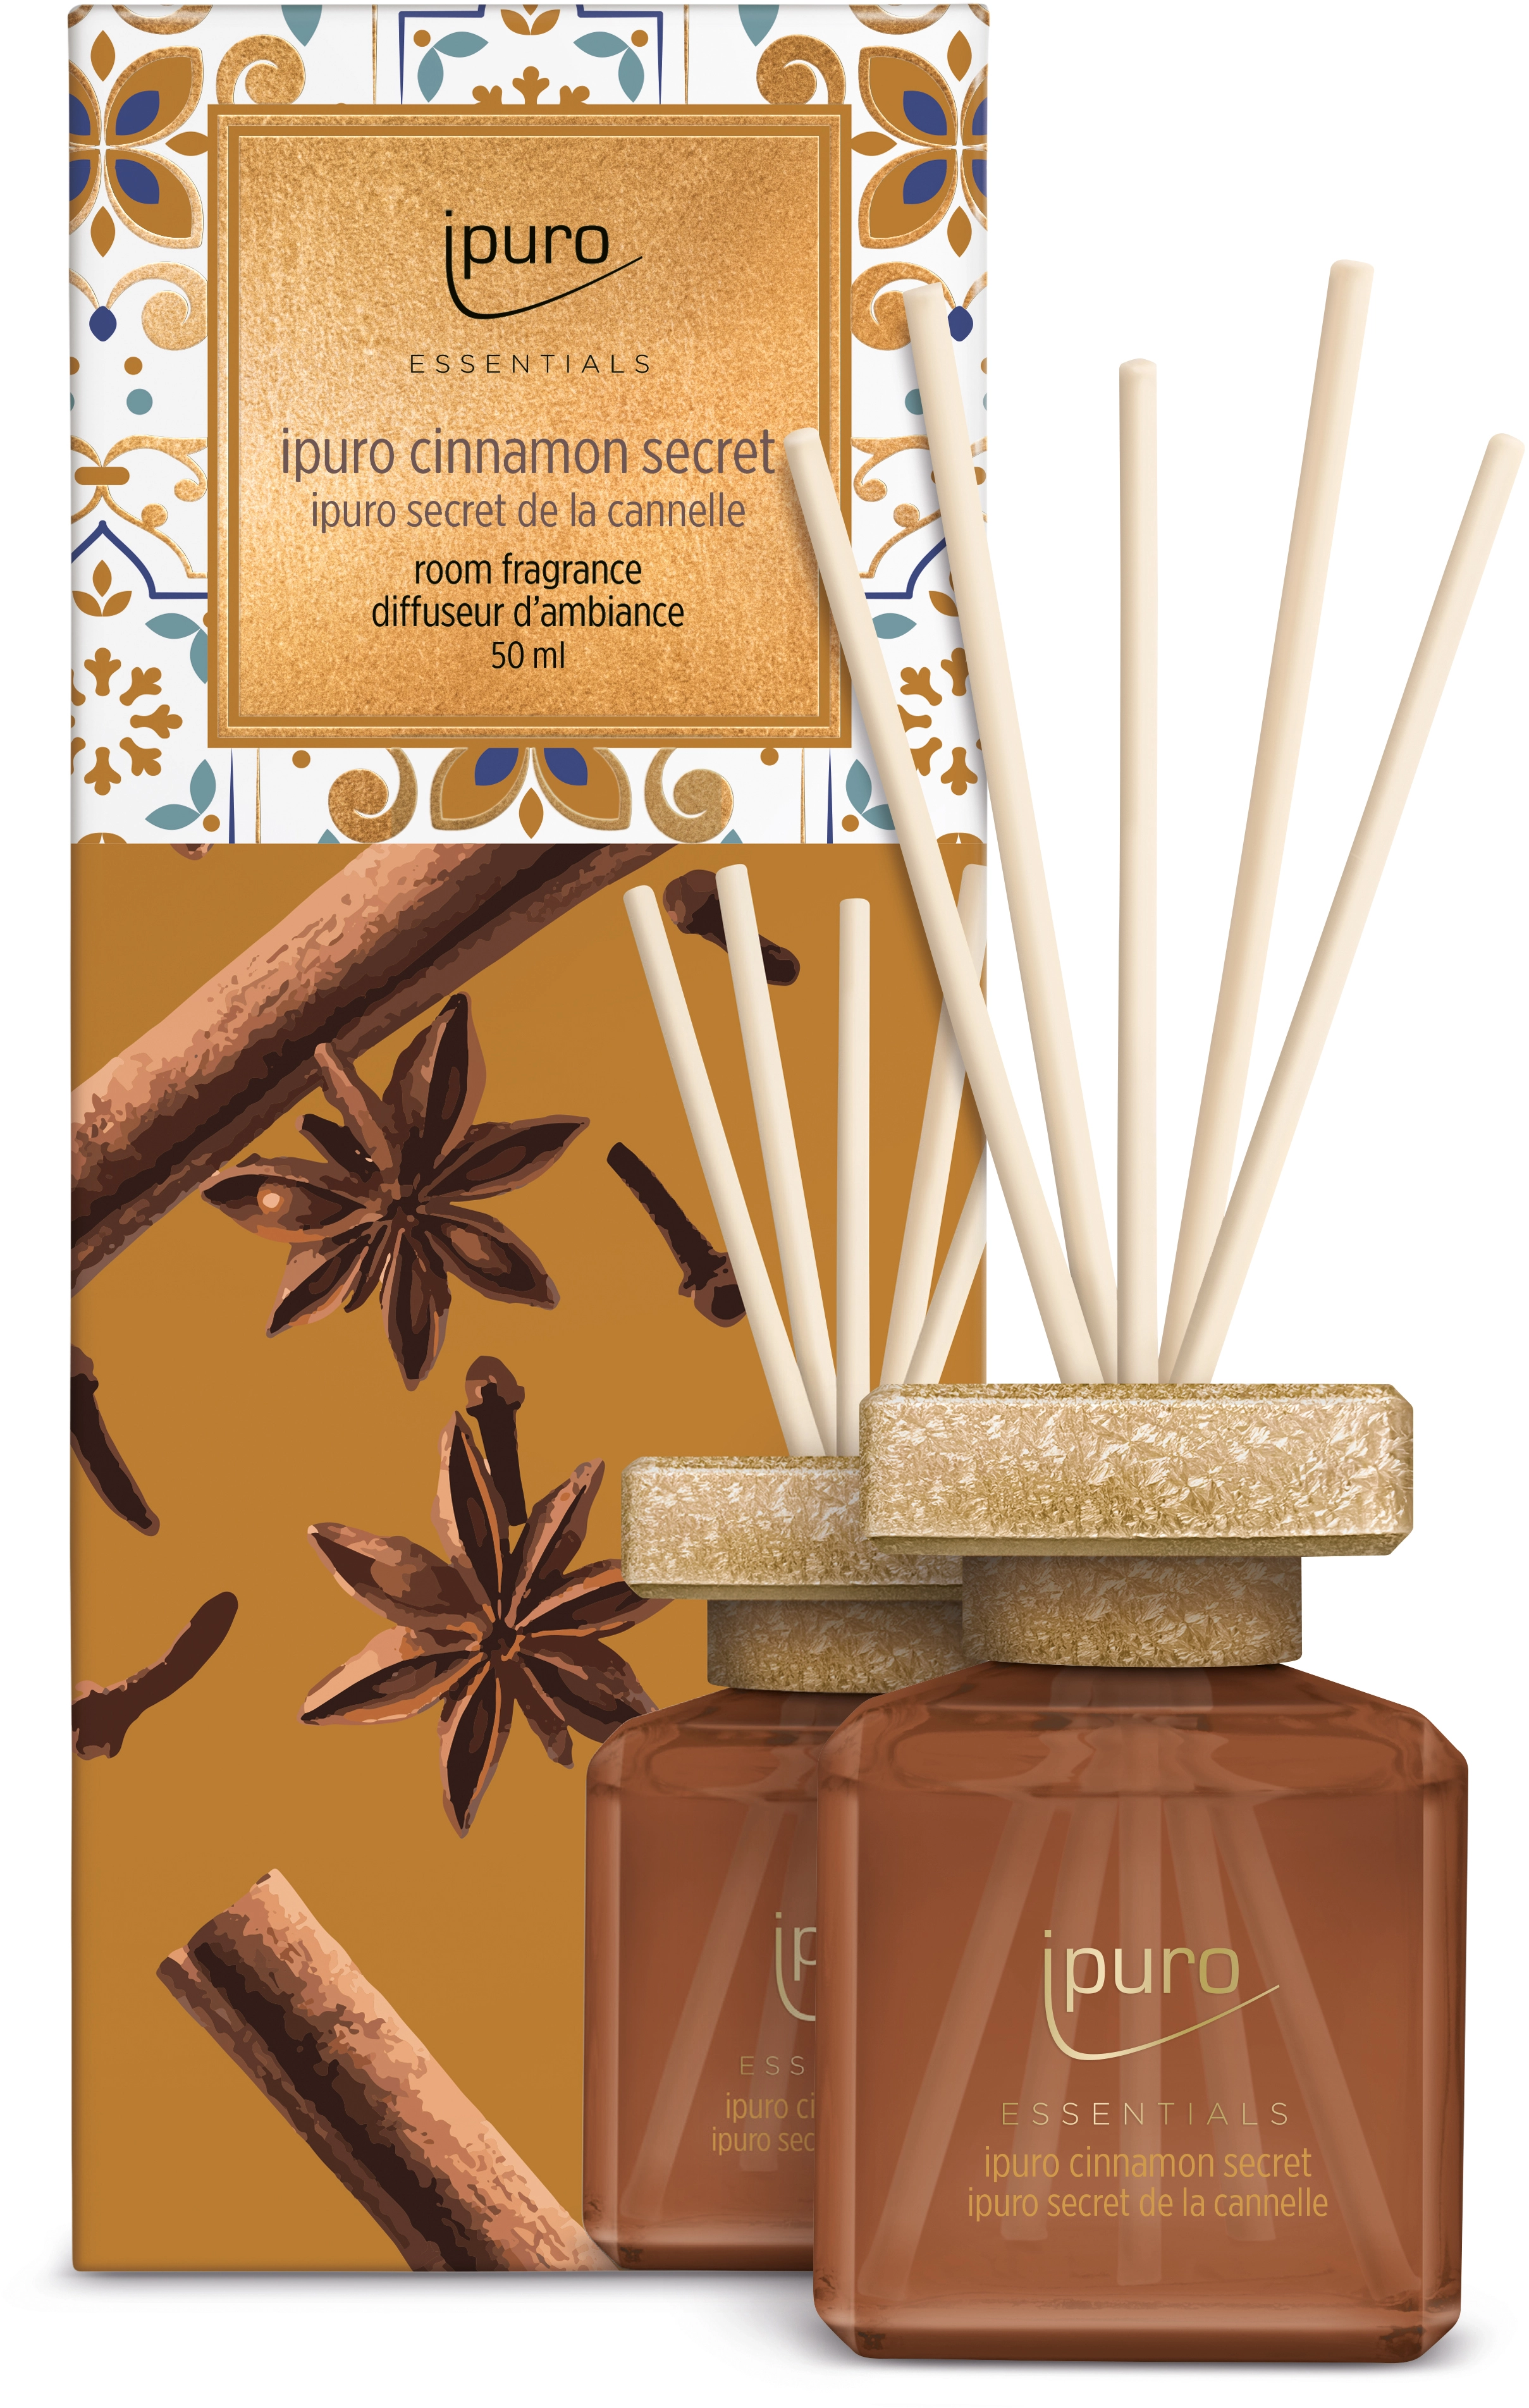 Ipuro Raumduft Essentials Cinnamon Secret 50 ml kaufen bei OBI